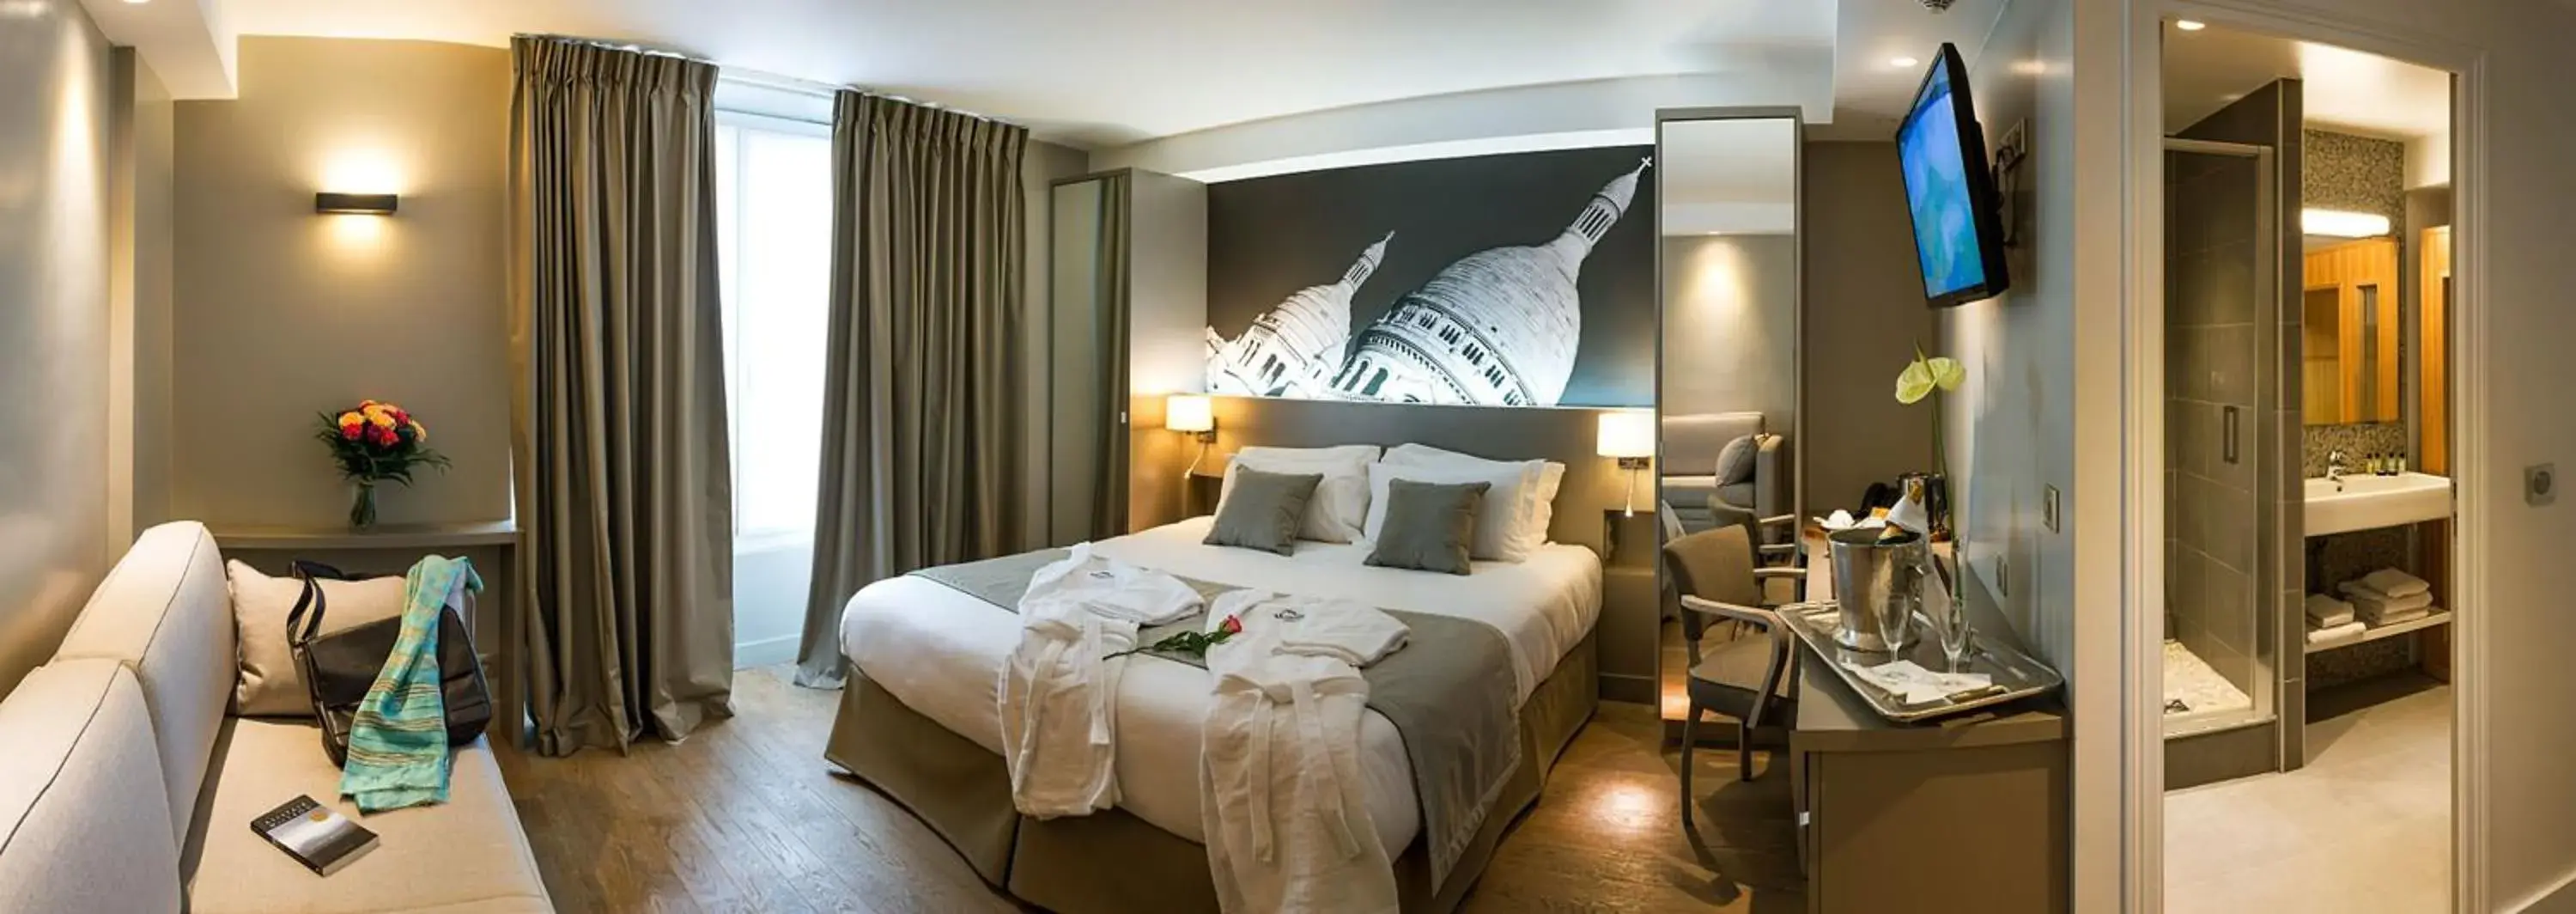 Deluxe Room in Midnight Hotel Paris